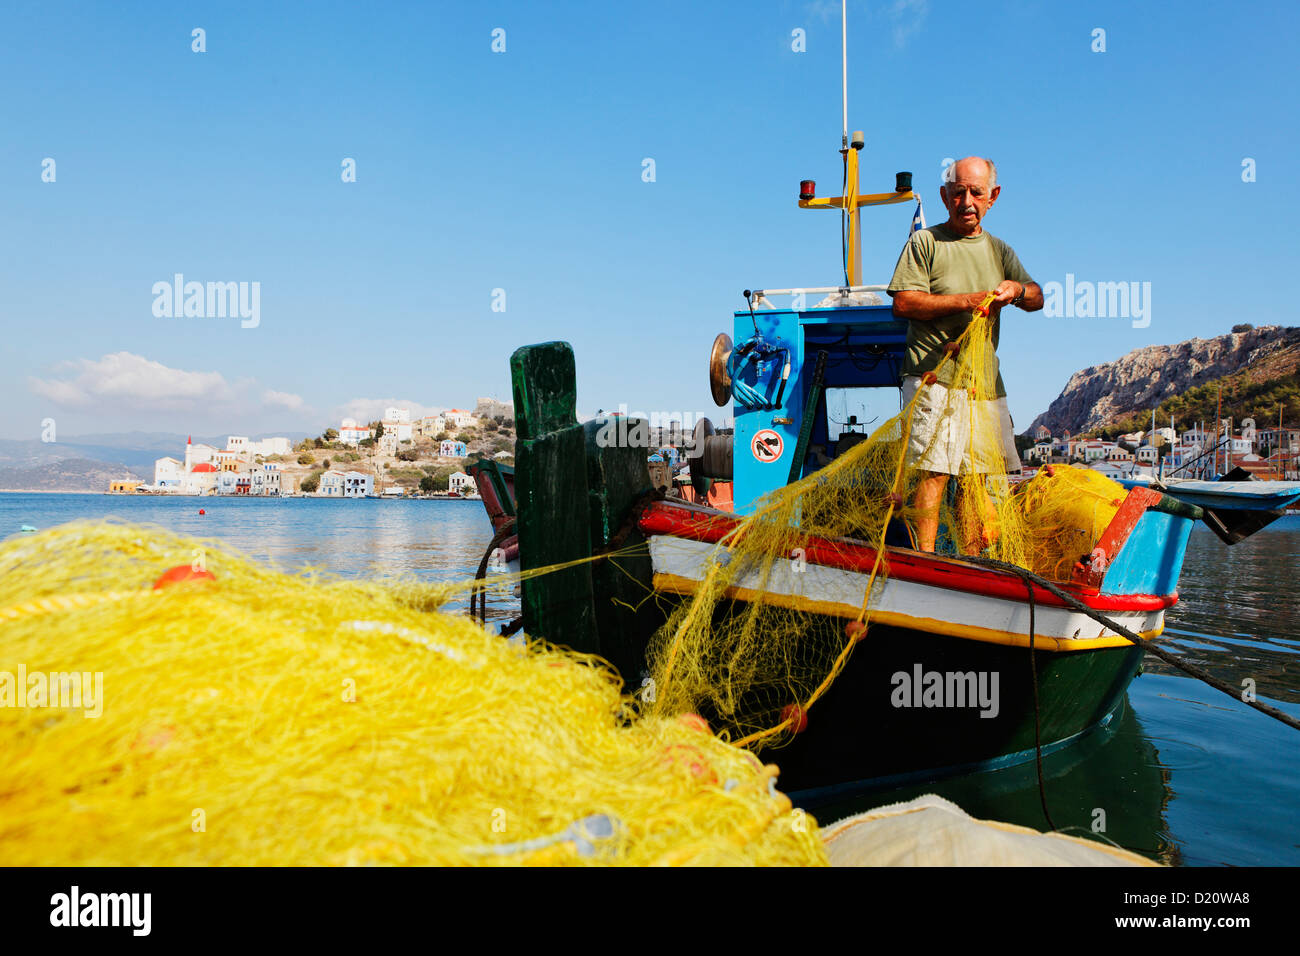 Fischer mit seinem Boot im Hafen von Kastelorizo Megiste, Dodekanes, Griechenland, Europa Stockfoto